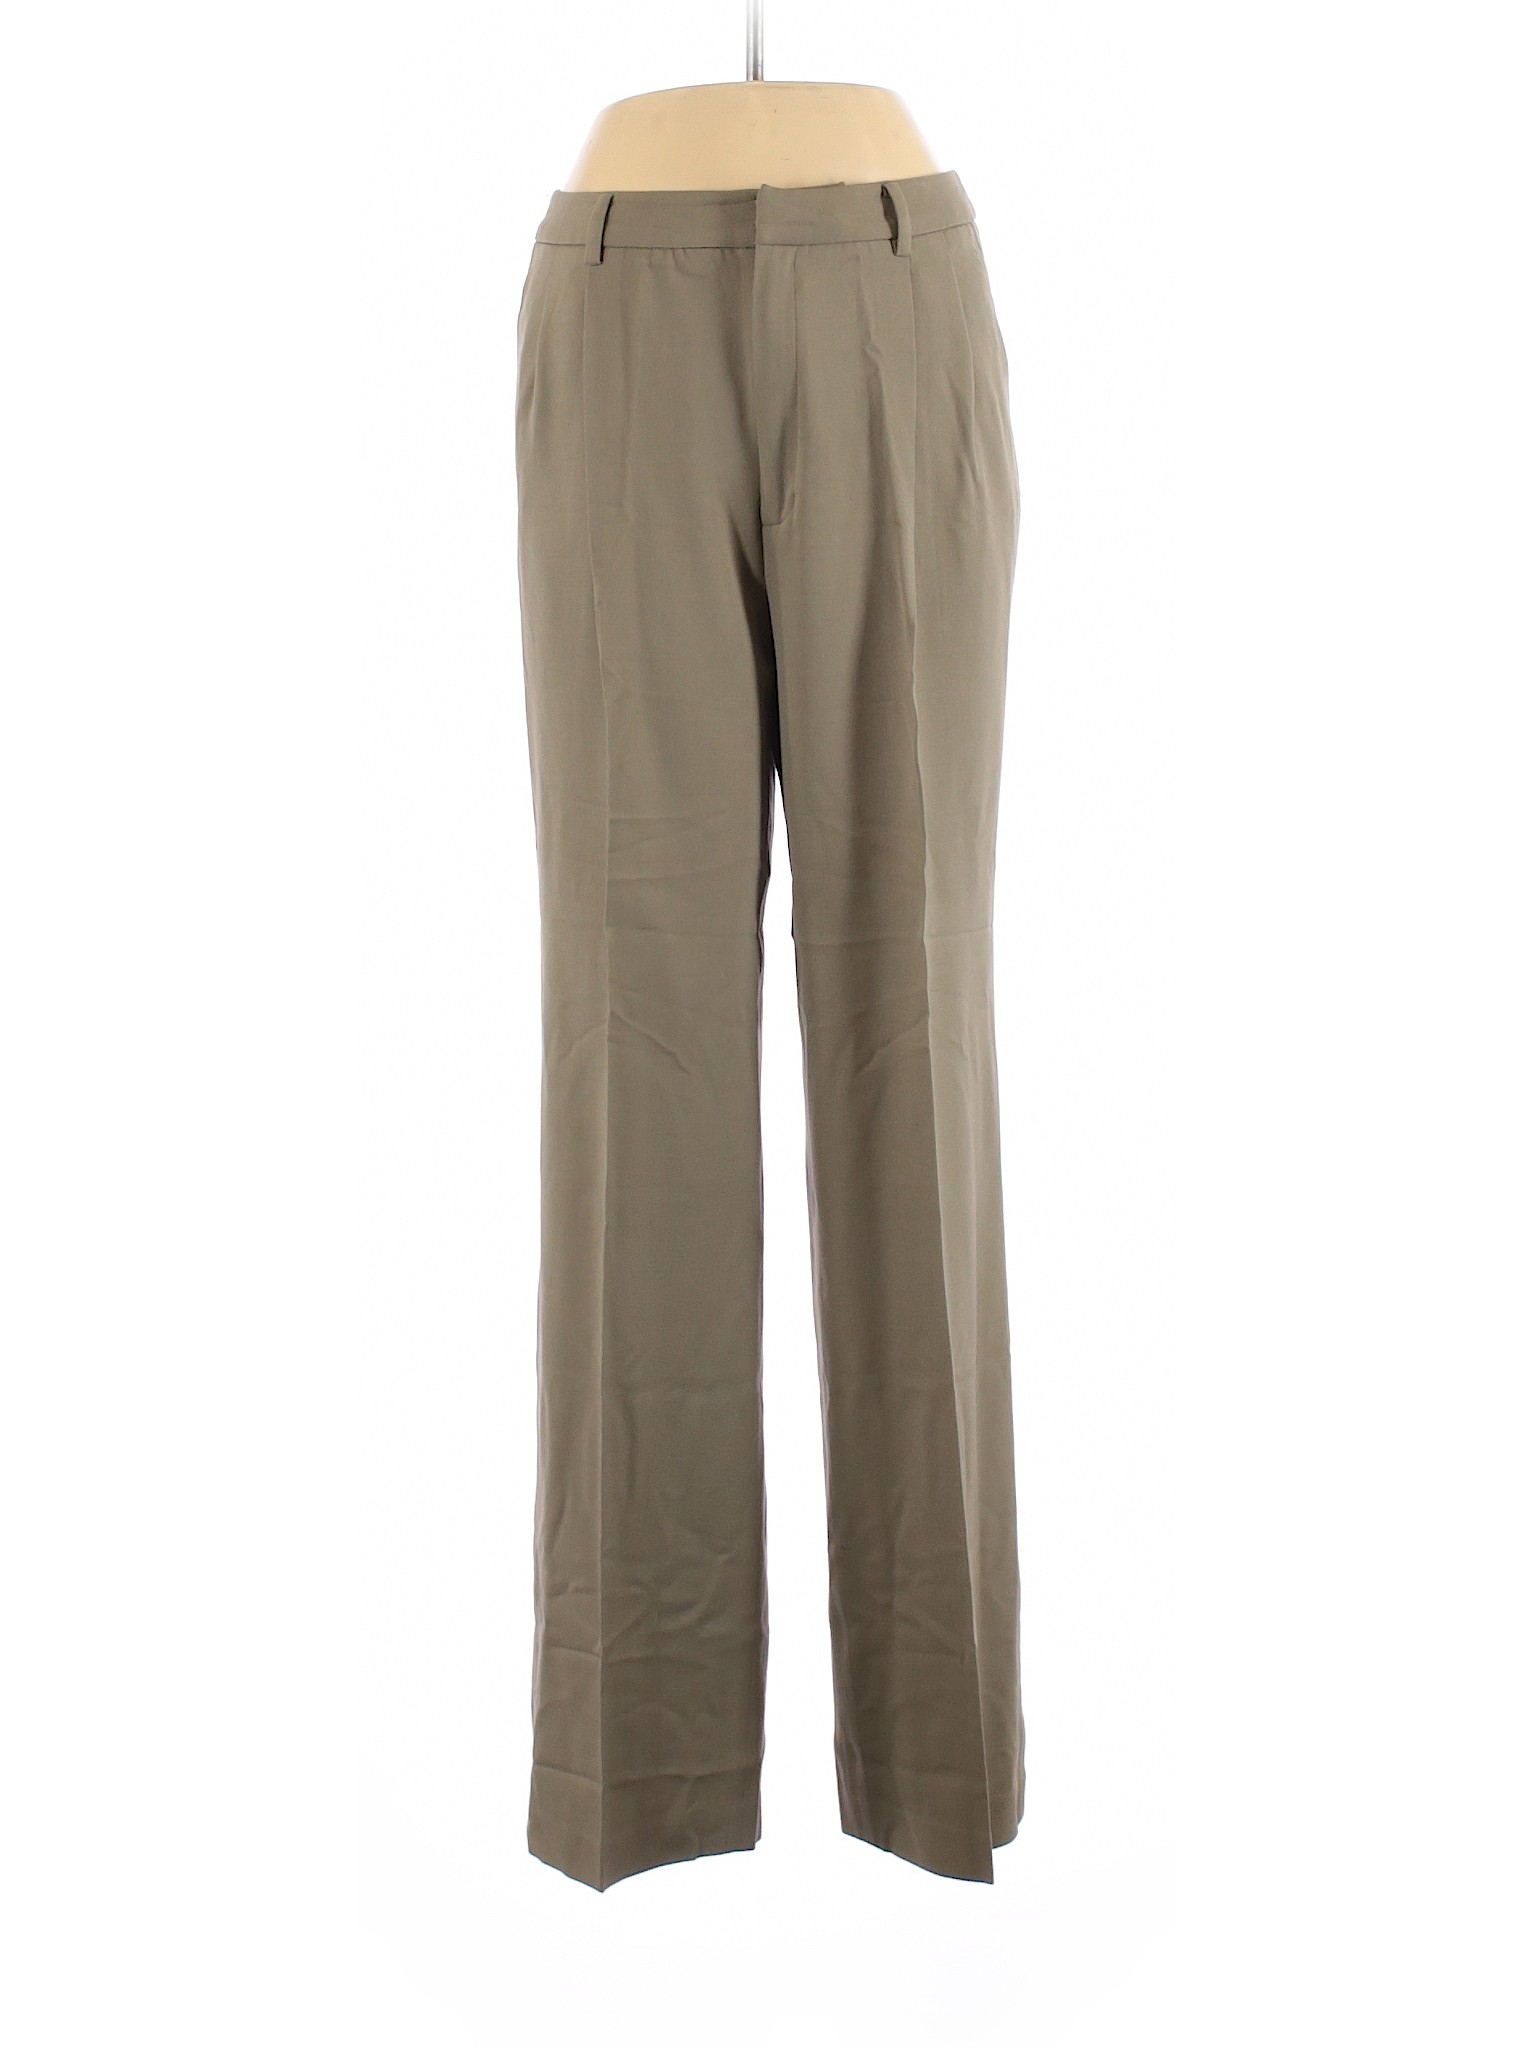 Linda Allard Ellen Tracy Women Green Wool Pants 10 | eBay